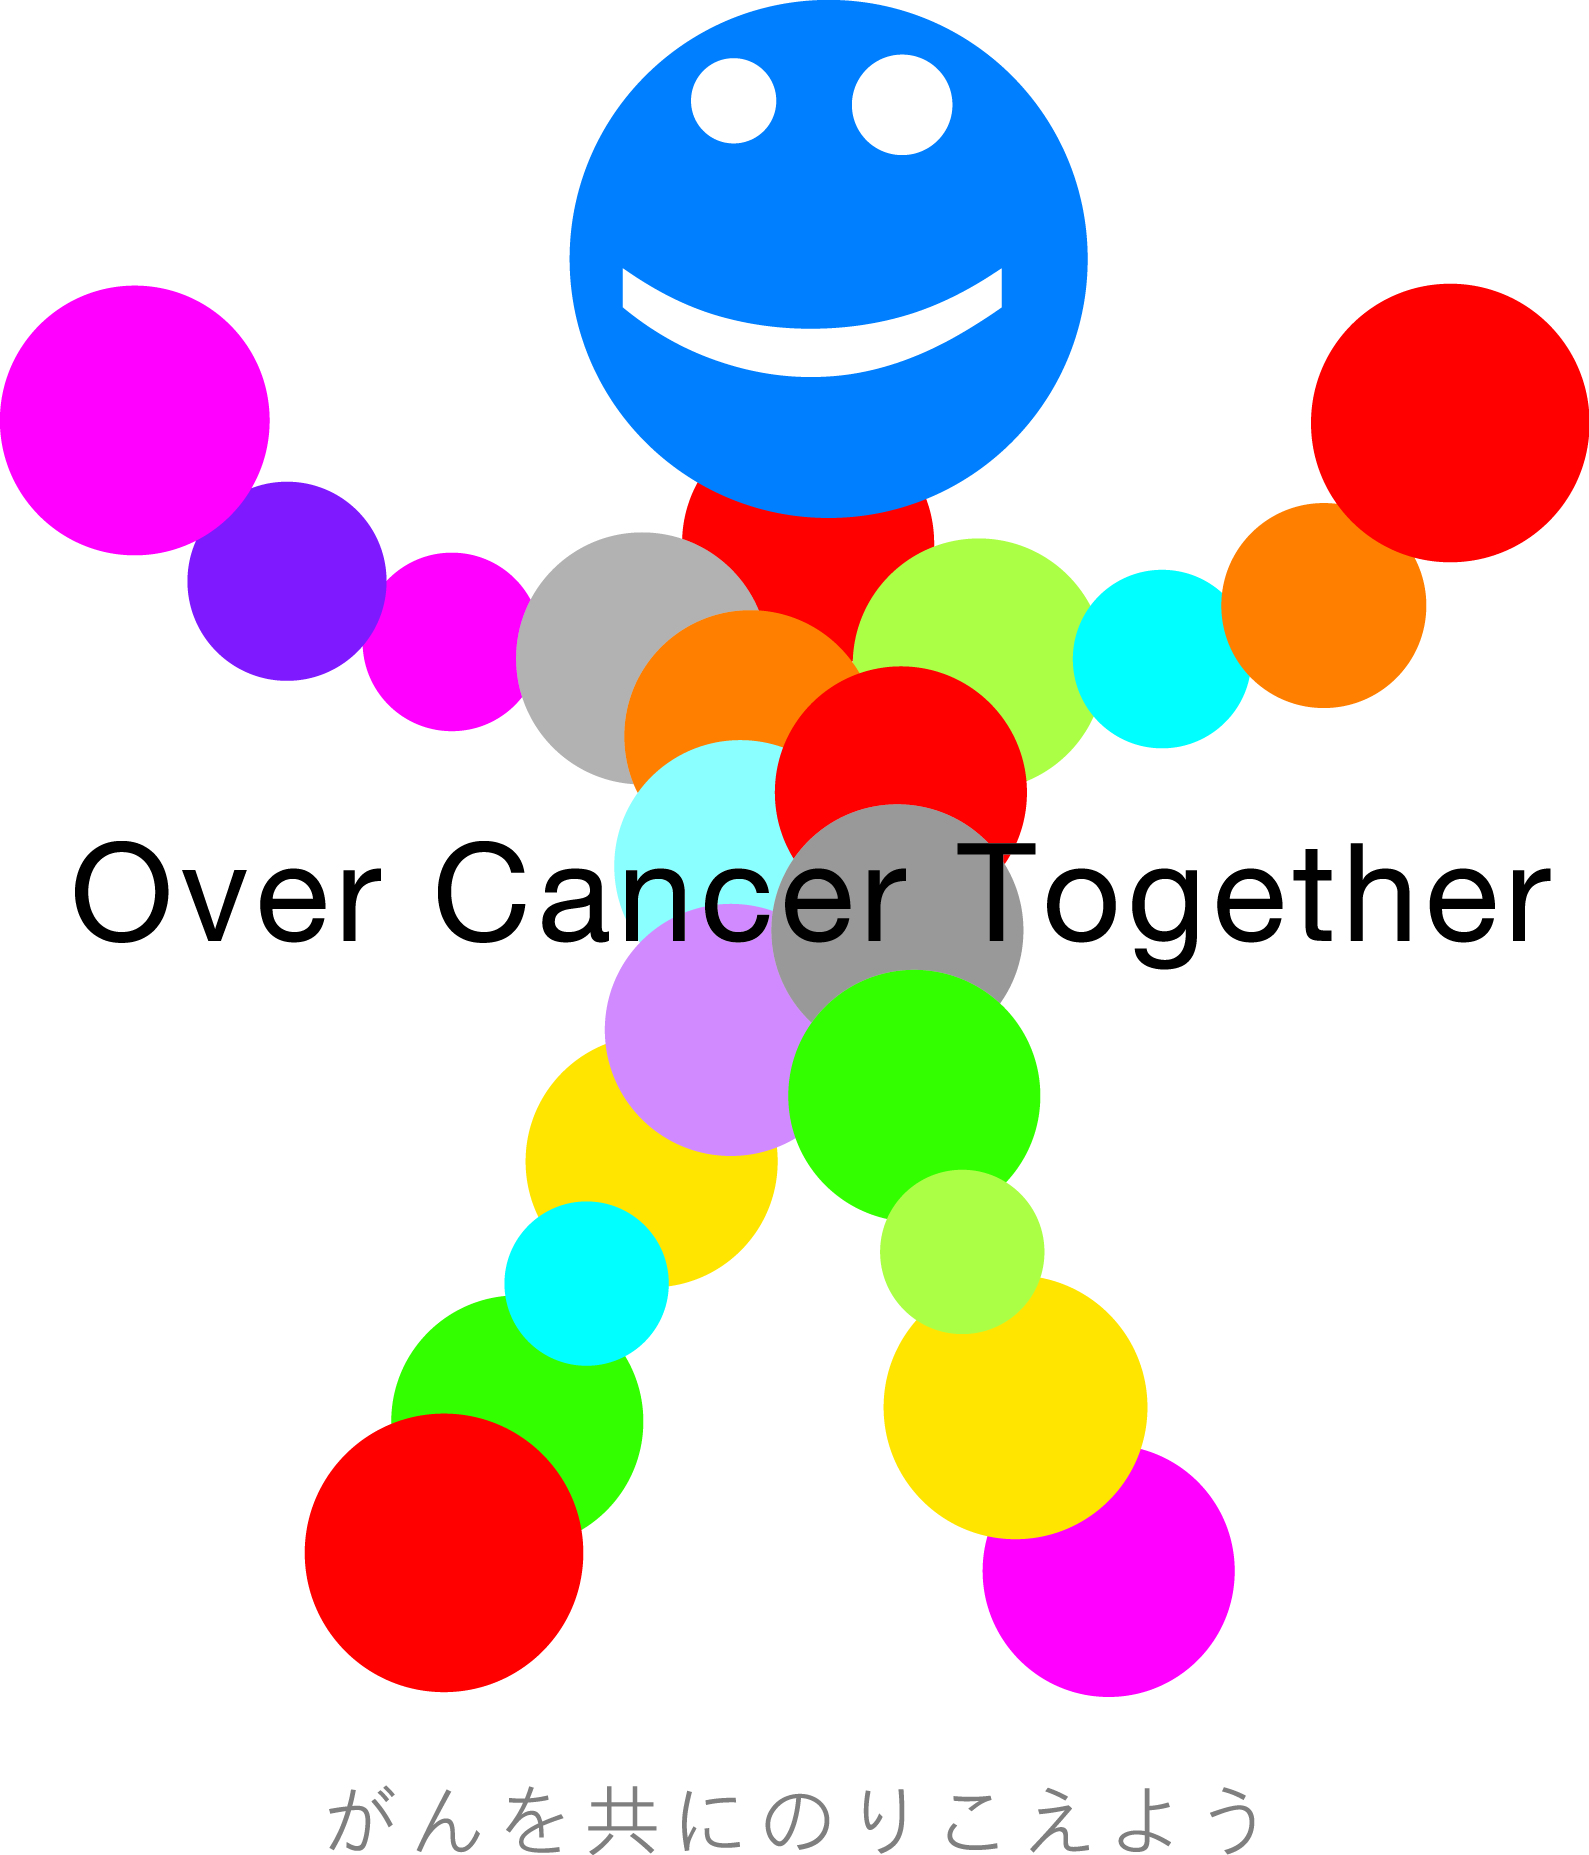 Over Cancer Together キャンペーン　公式ウェッブサイトオープン